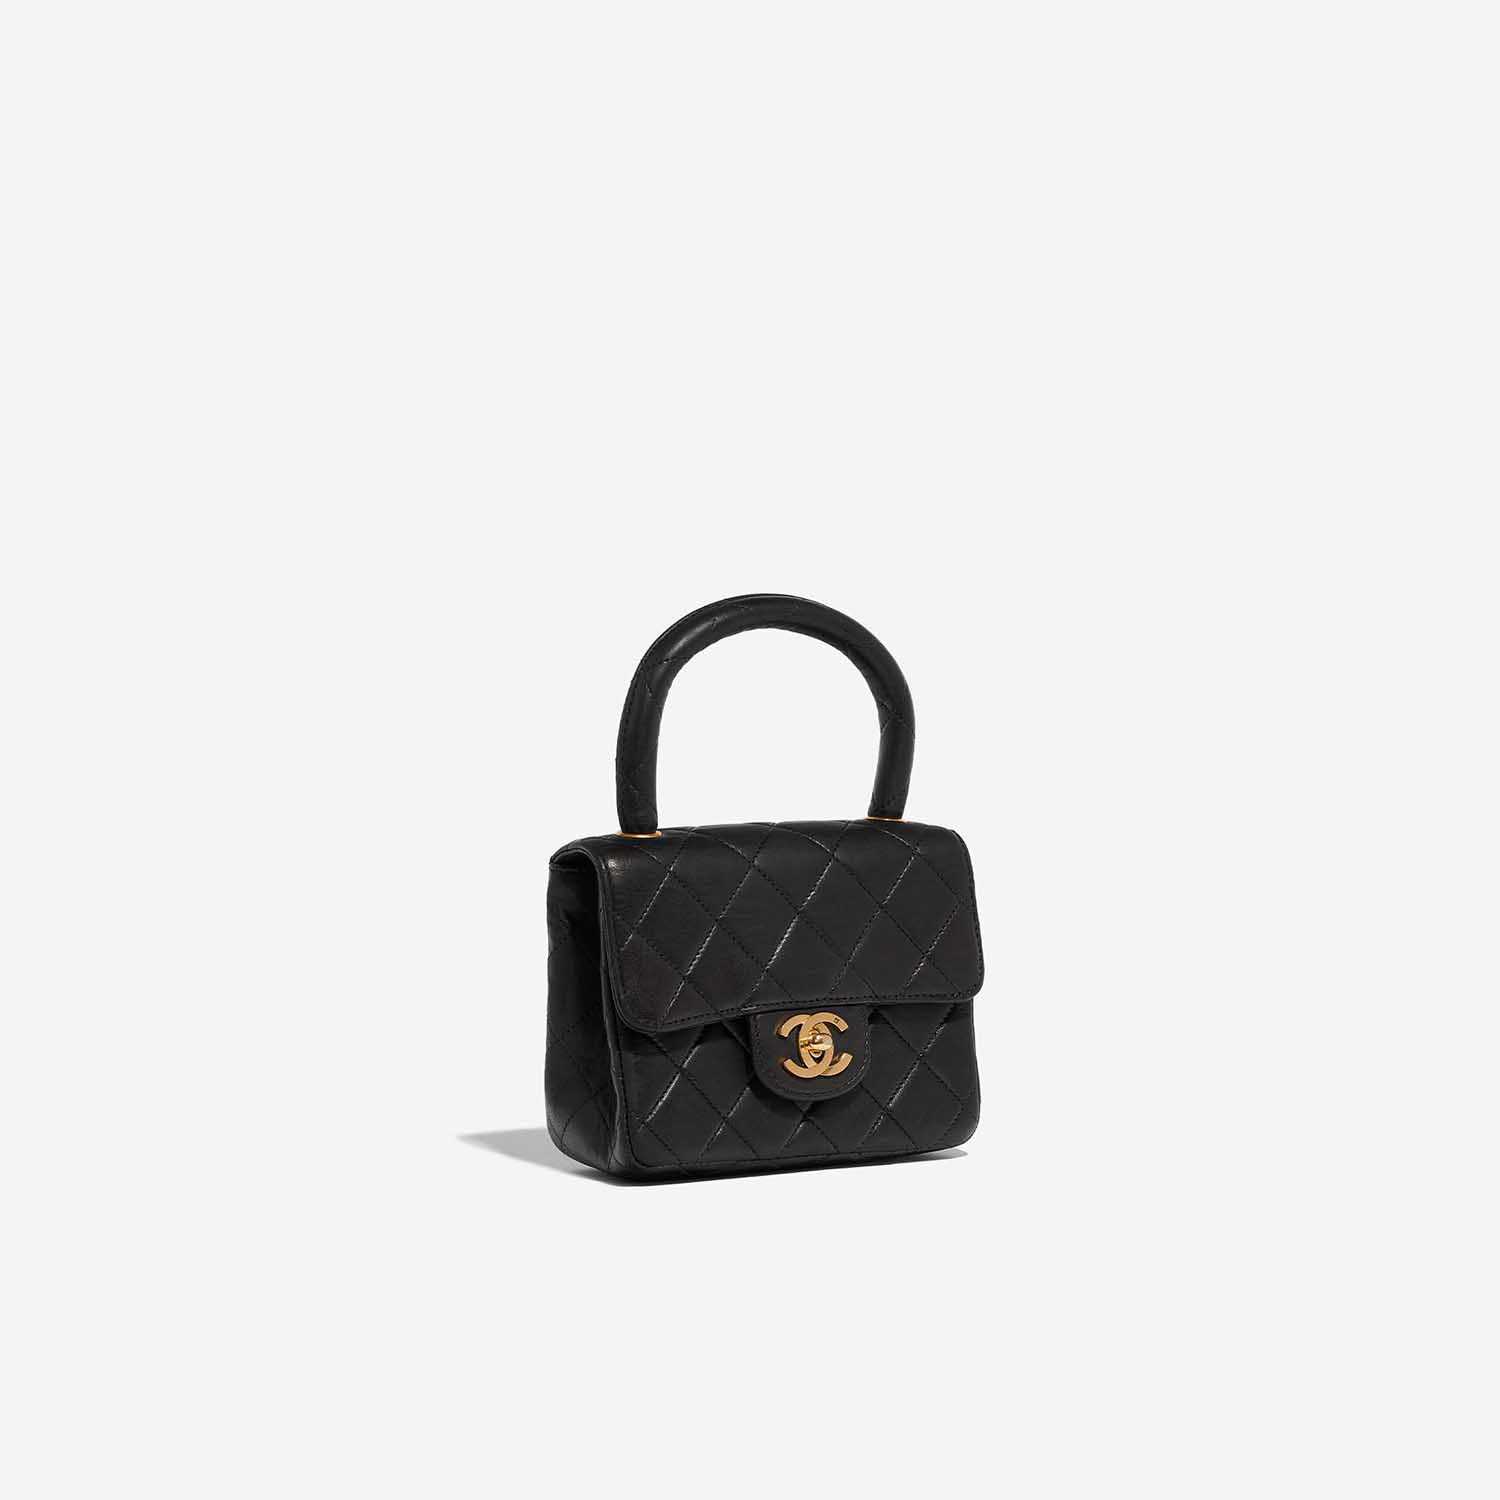 Chanel black leather gold hardware CC logo shoulder bag  Chanel PreOwned   Wondrland Capri